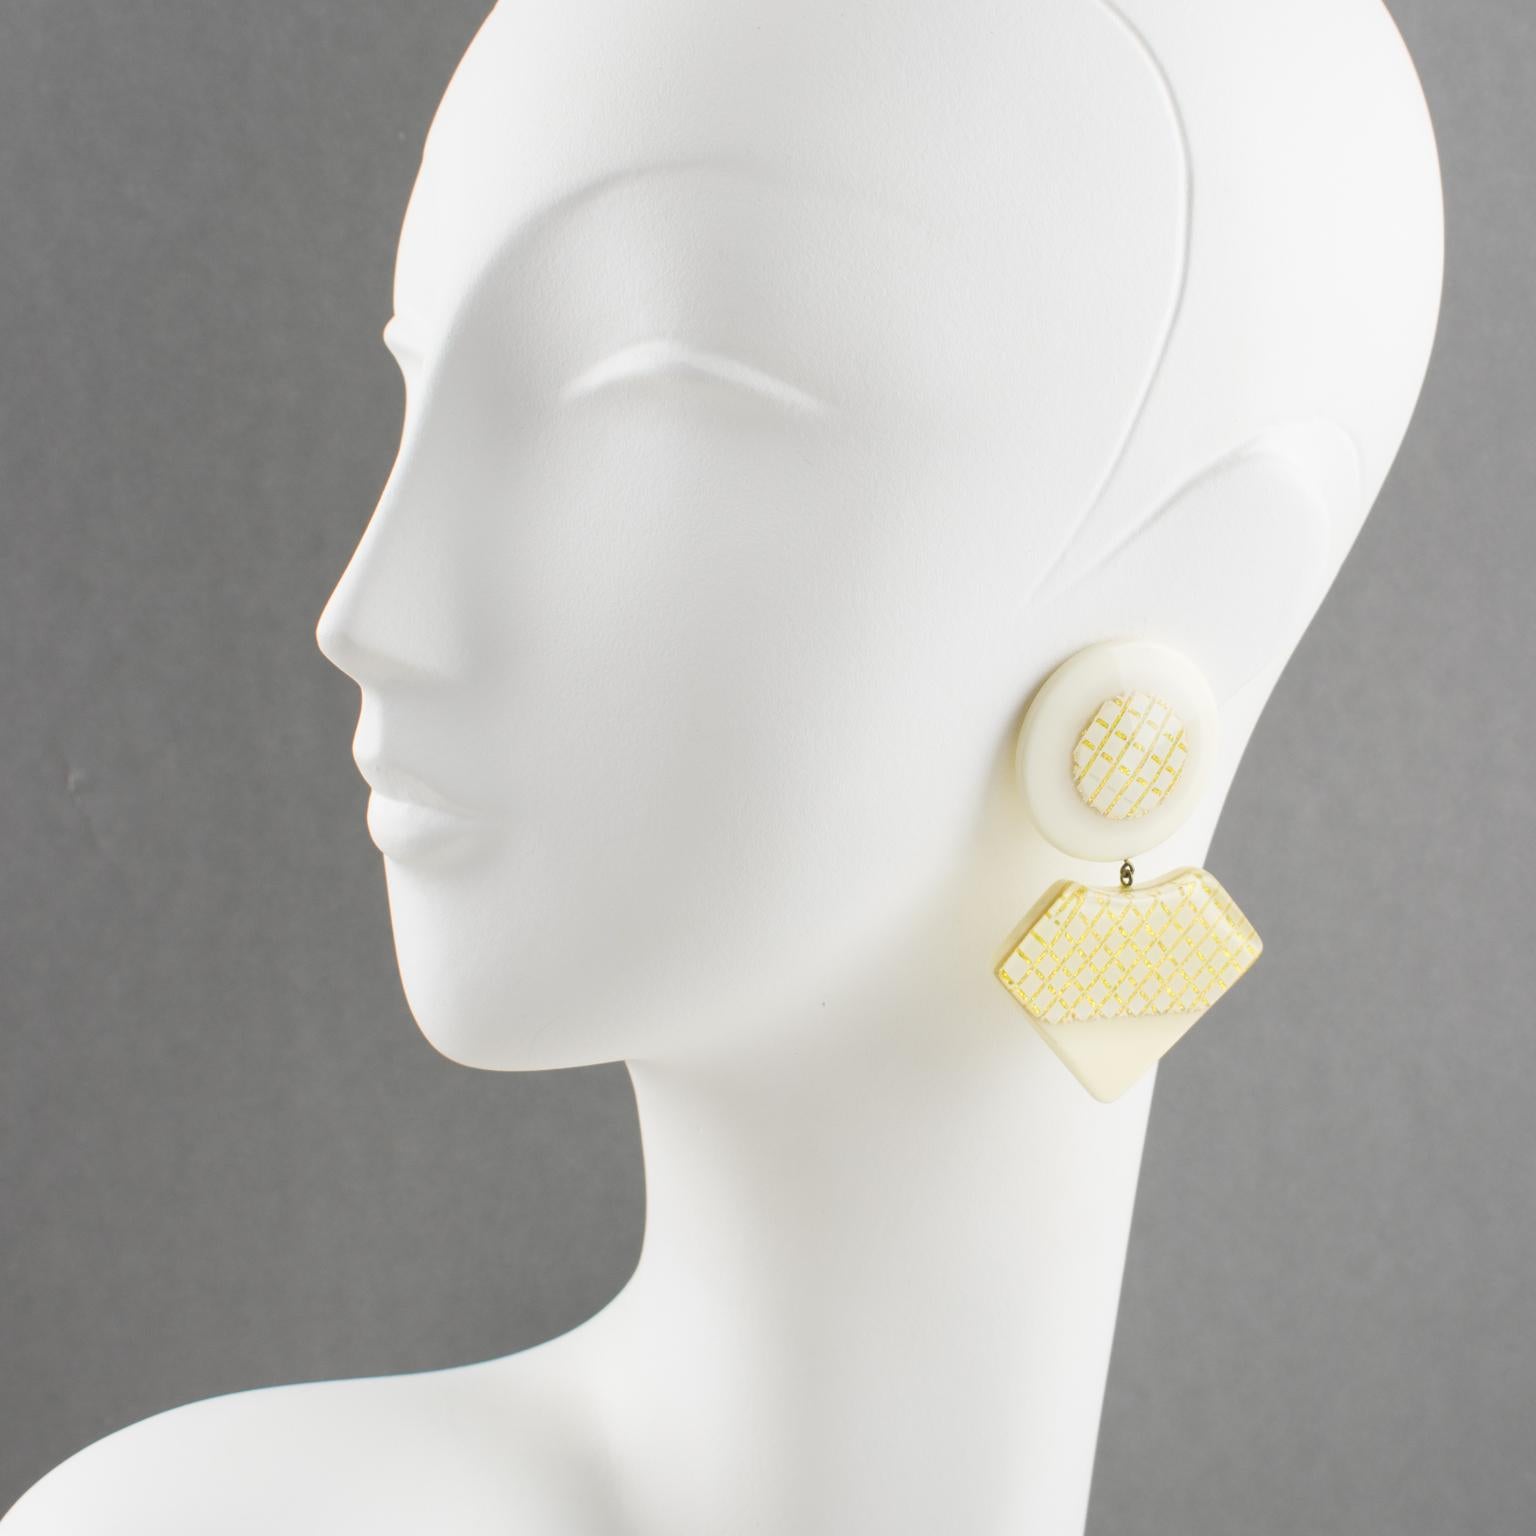 Jolies boucles d'oreilles à clip en Lucite surdimensionnées. Les éléments géométriques pendants se trouvent sur le fond de couleur crème et blanc, avec des motifs géométriques dorés incrustés. Il n'y a pas de marque de fabricant visible.
Dimensions